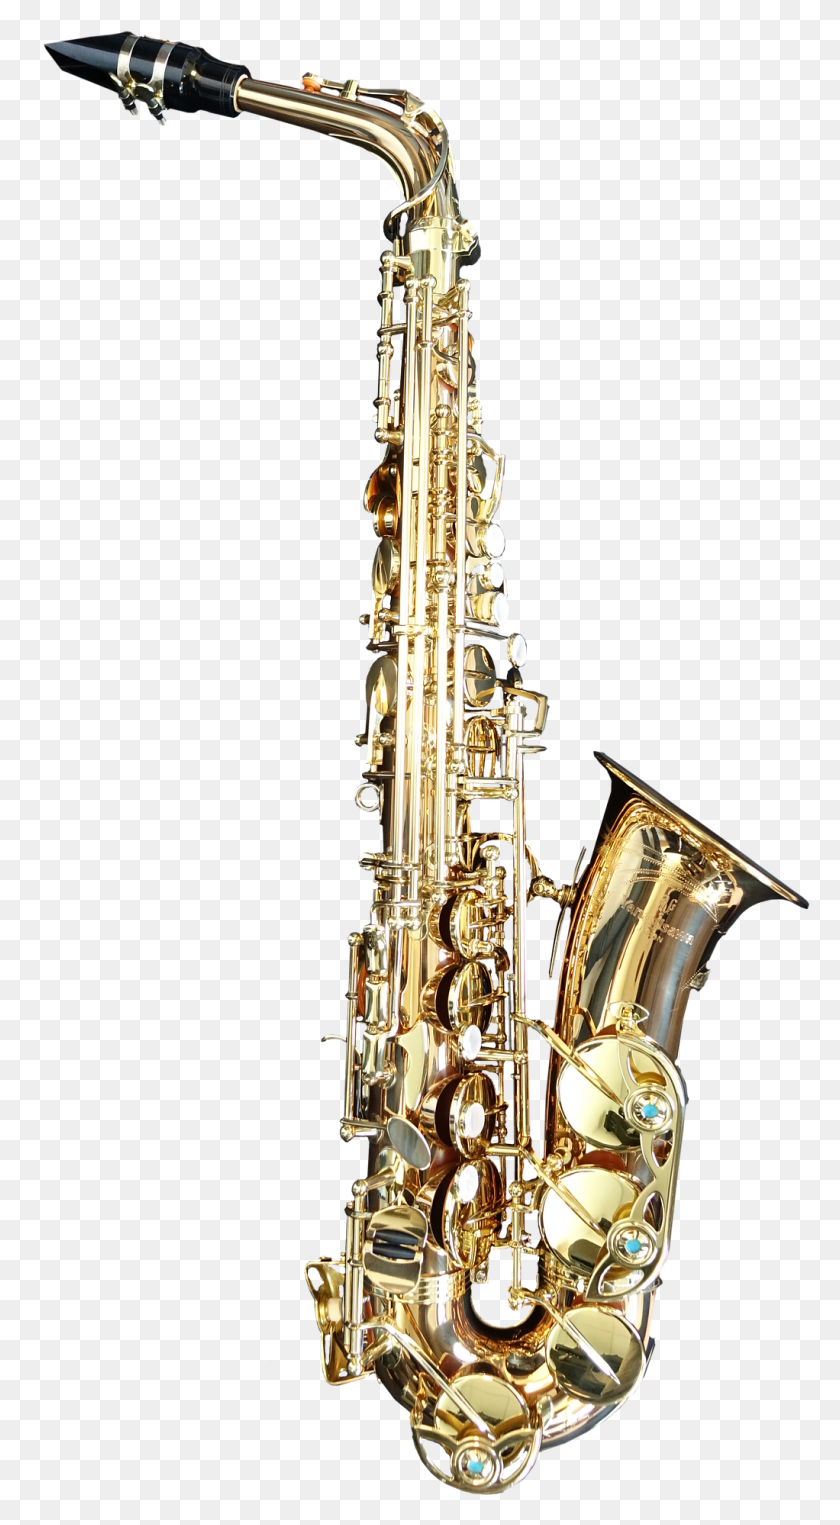 1022x1920 Descargar Png Música Imágenes Jupiter 500 Series Saxofón Alto, Actividades De Ocio, Instrumento Musical, Candelabro Hd Png